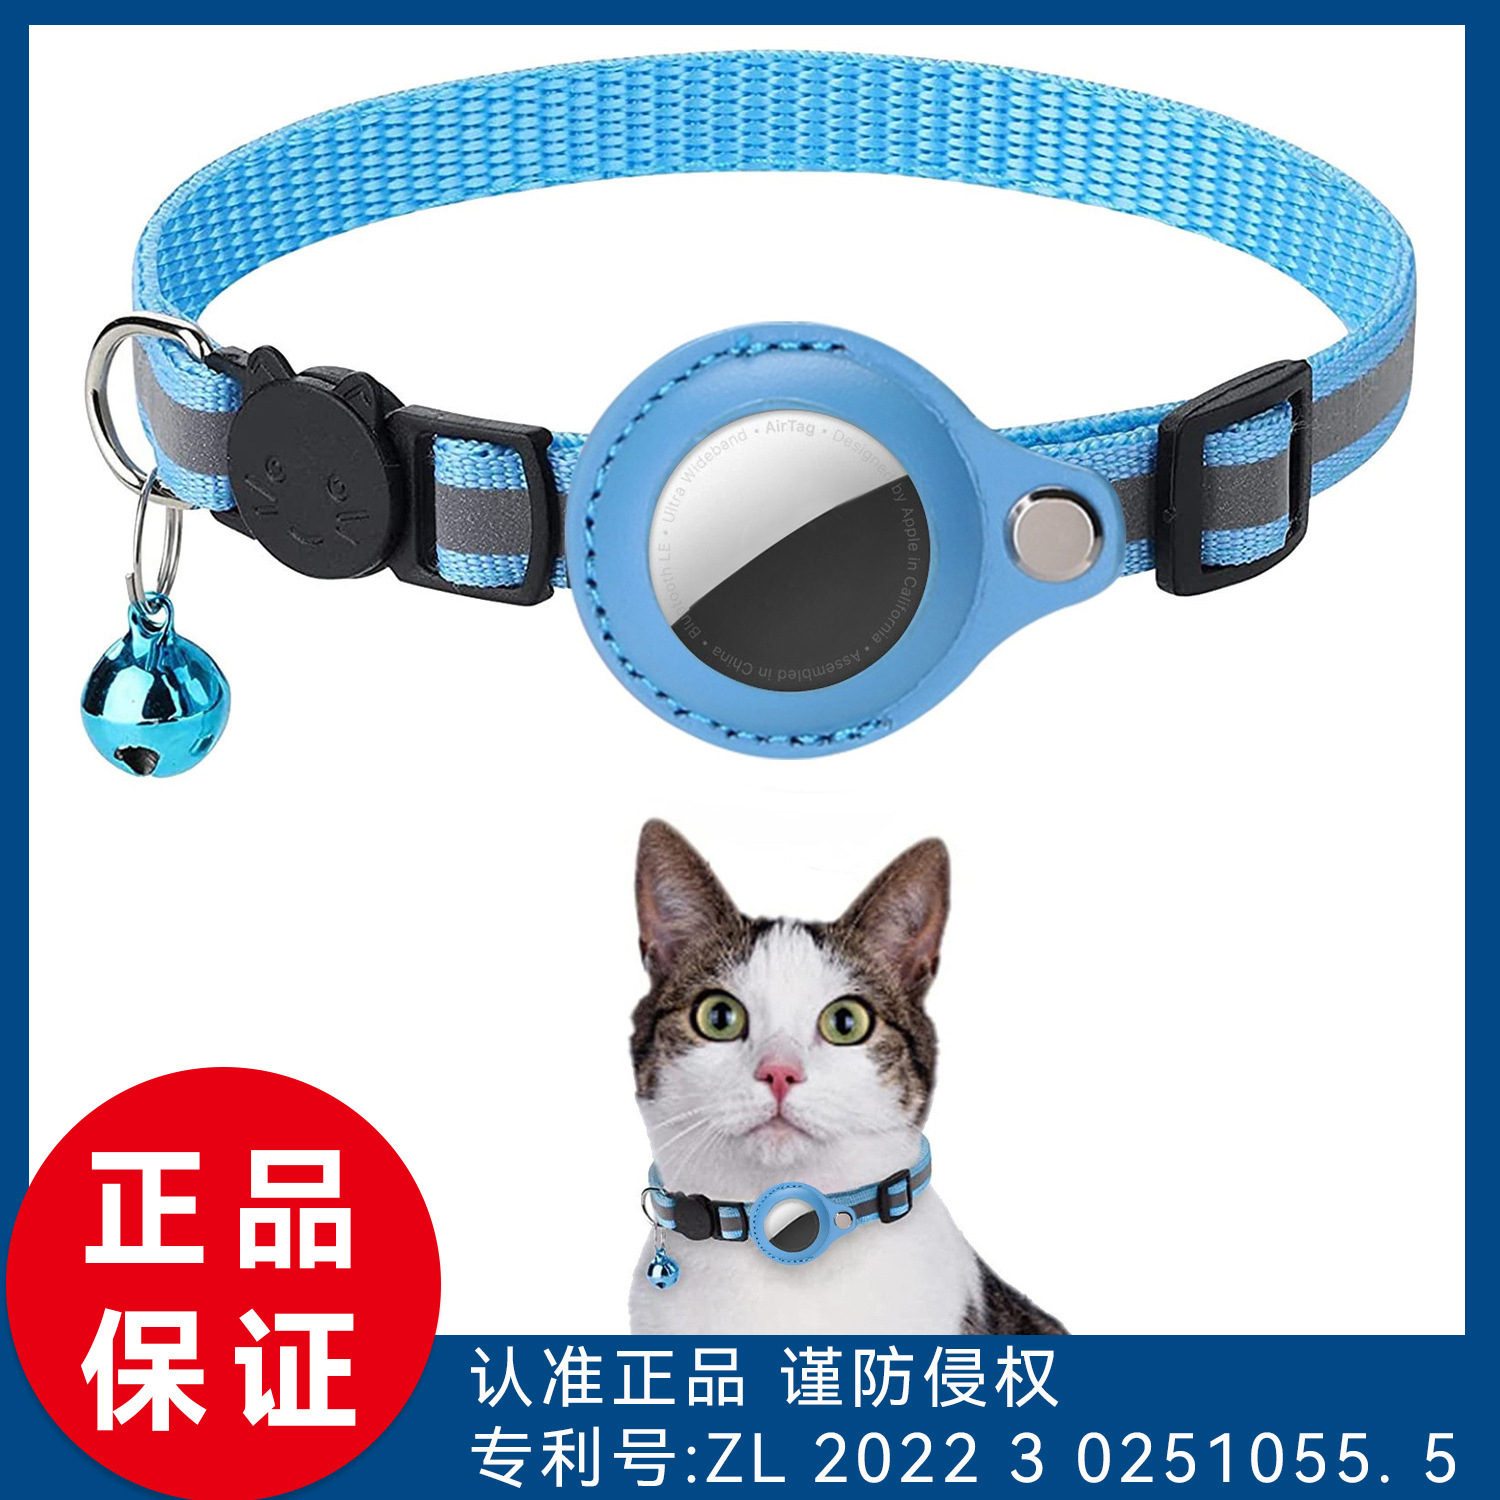 ペットのエアタグトラッカー保護カバー、迷子防止ペット位置決め首輪、猫の反射ベル首輪に適しています。